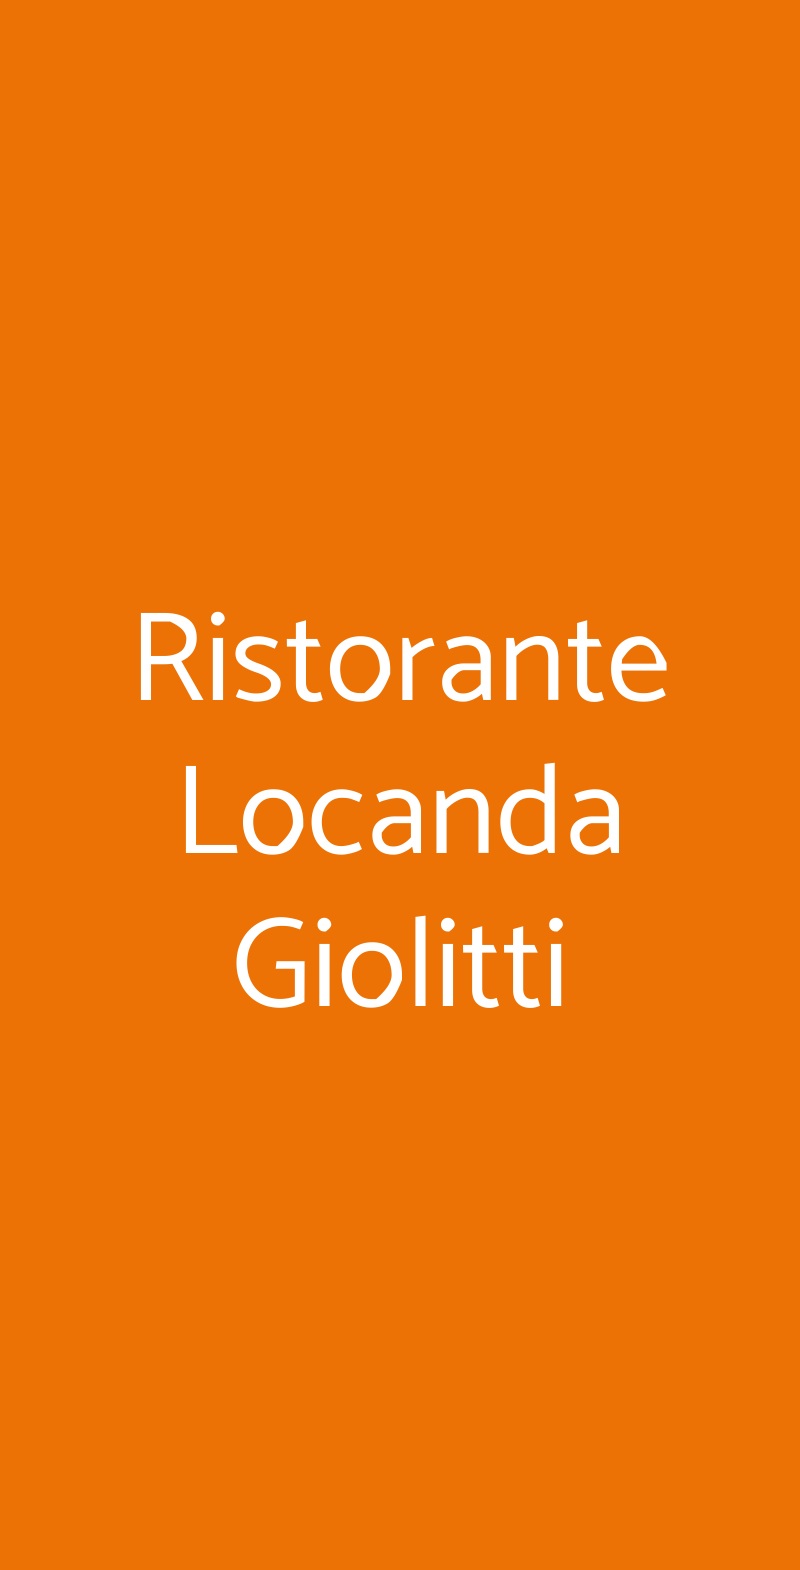 Ristorante Locanda Giolitti Roma menù 1 pagina